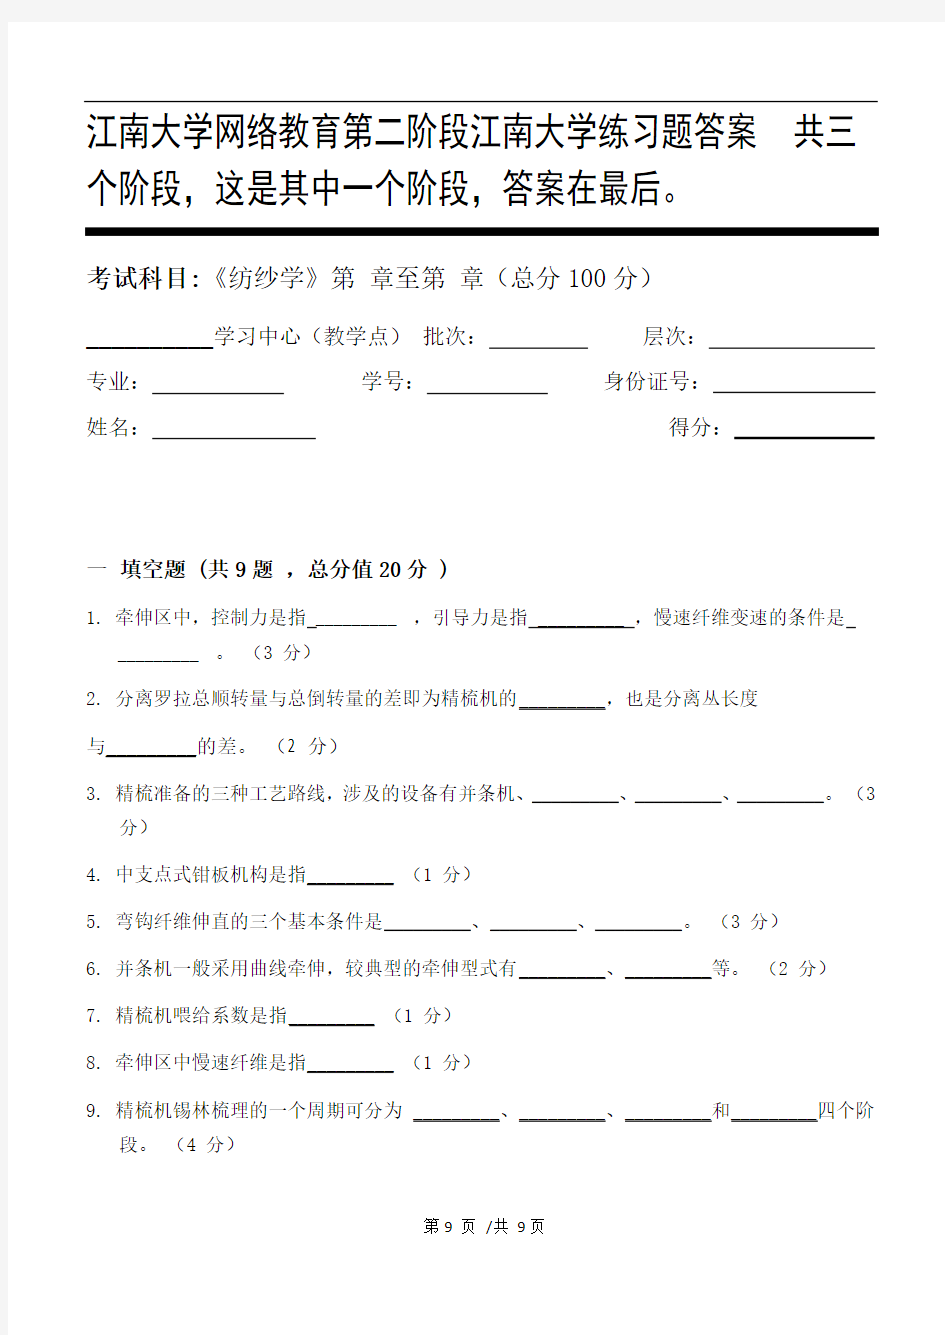 纺纱学第2阶段江南大学练习题答案  共三个阶段,这是其中一个阶段,答案在最后。